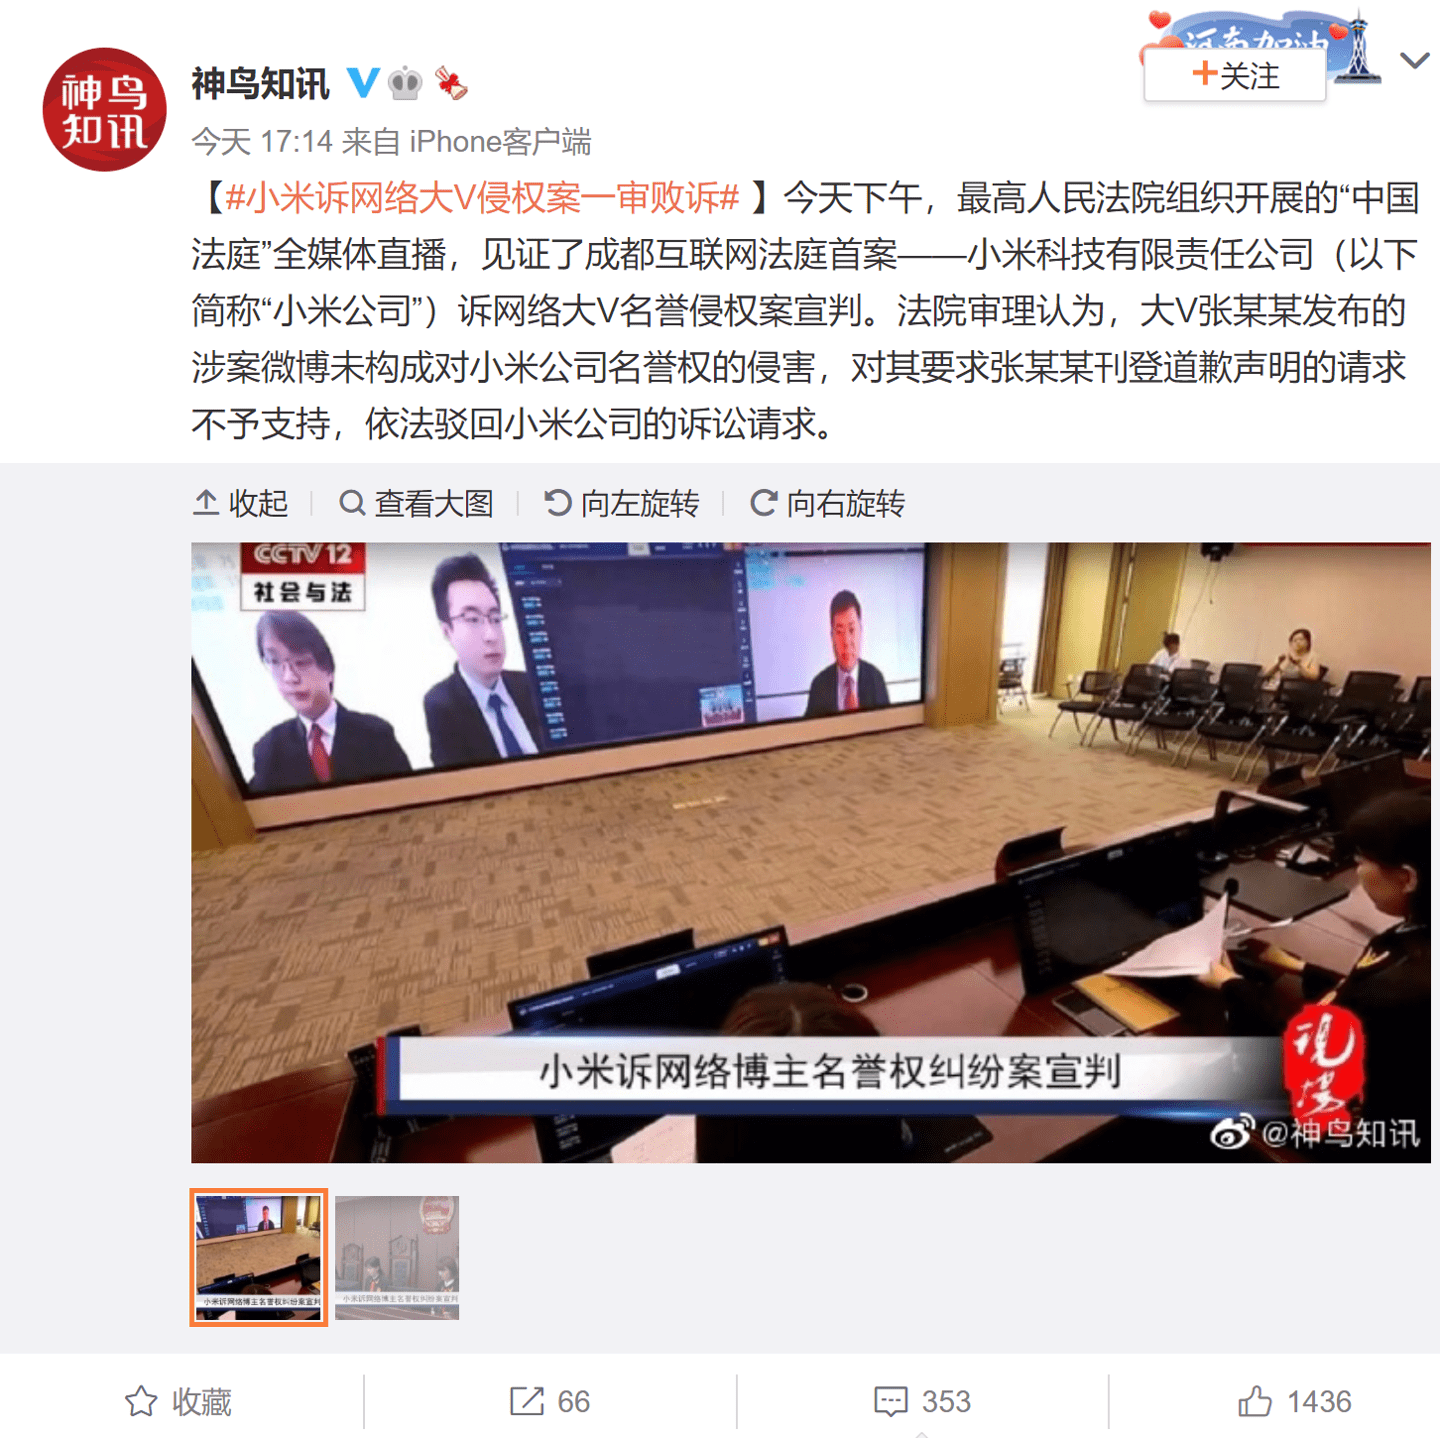 韶音诉小米专利侵权 案件已开庭审理-科技频道-和讯网